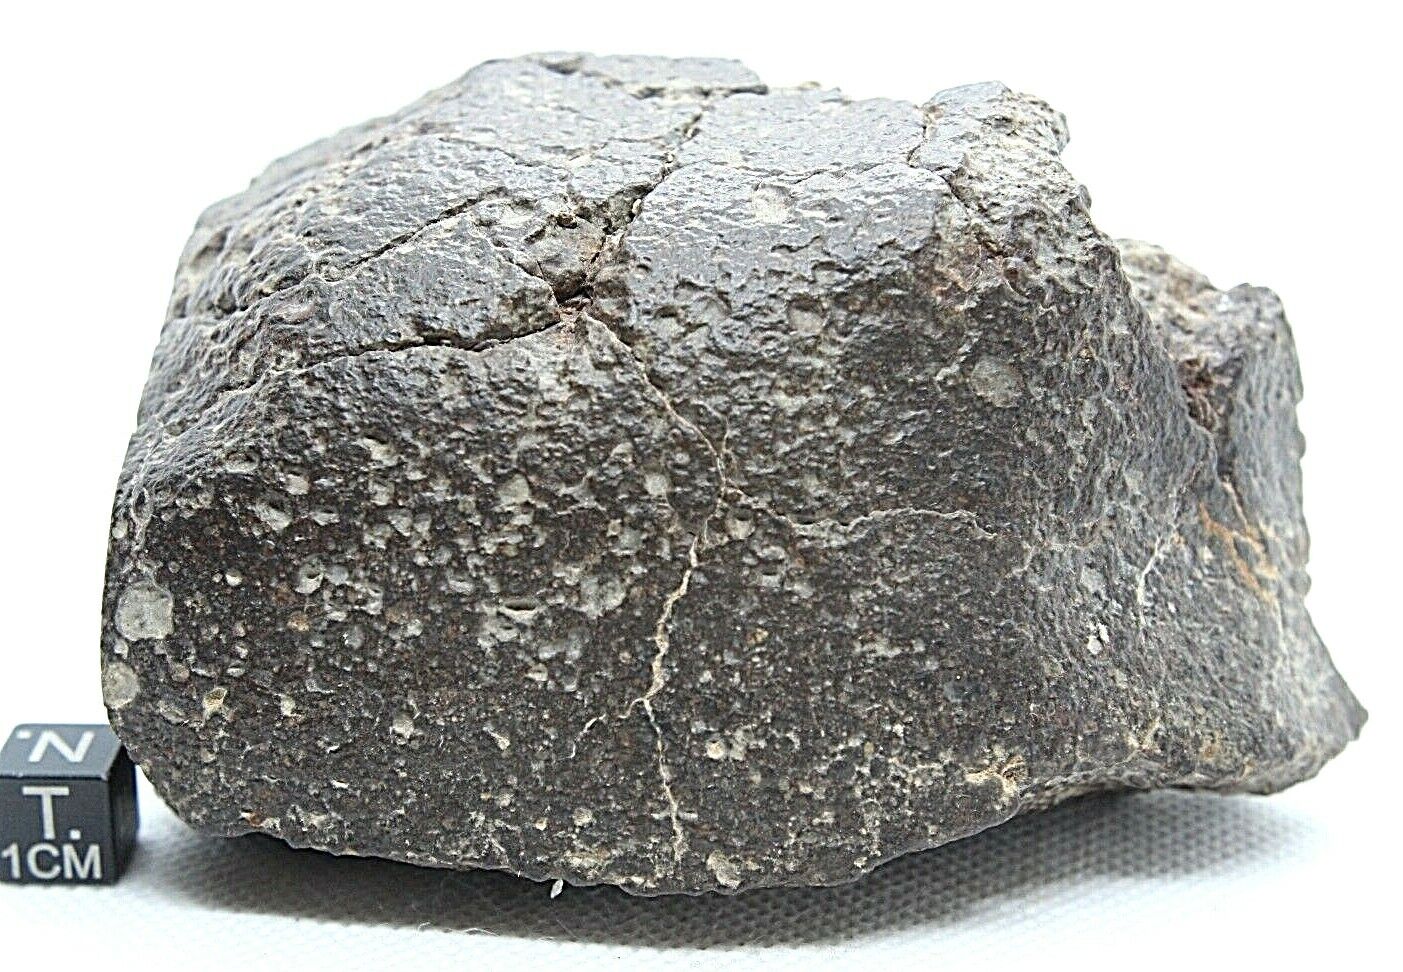 Meteorite incredible show piece, meteorite 746 gram meteorite, from outer space